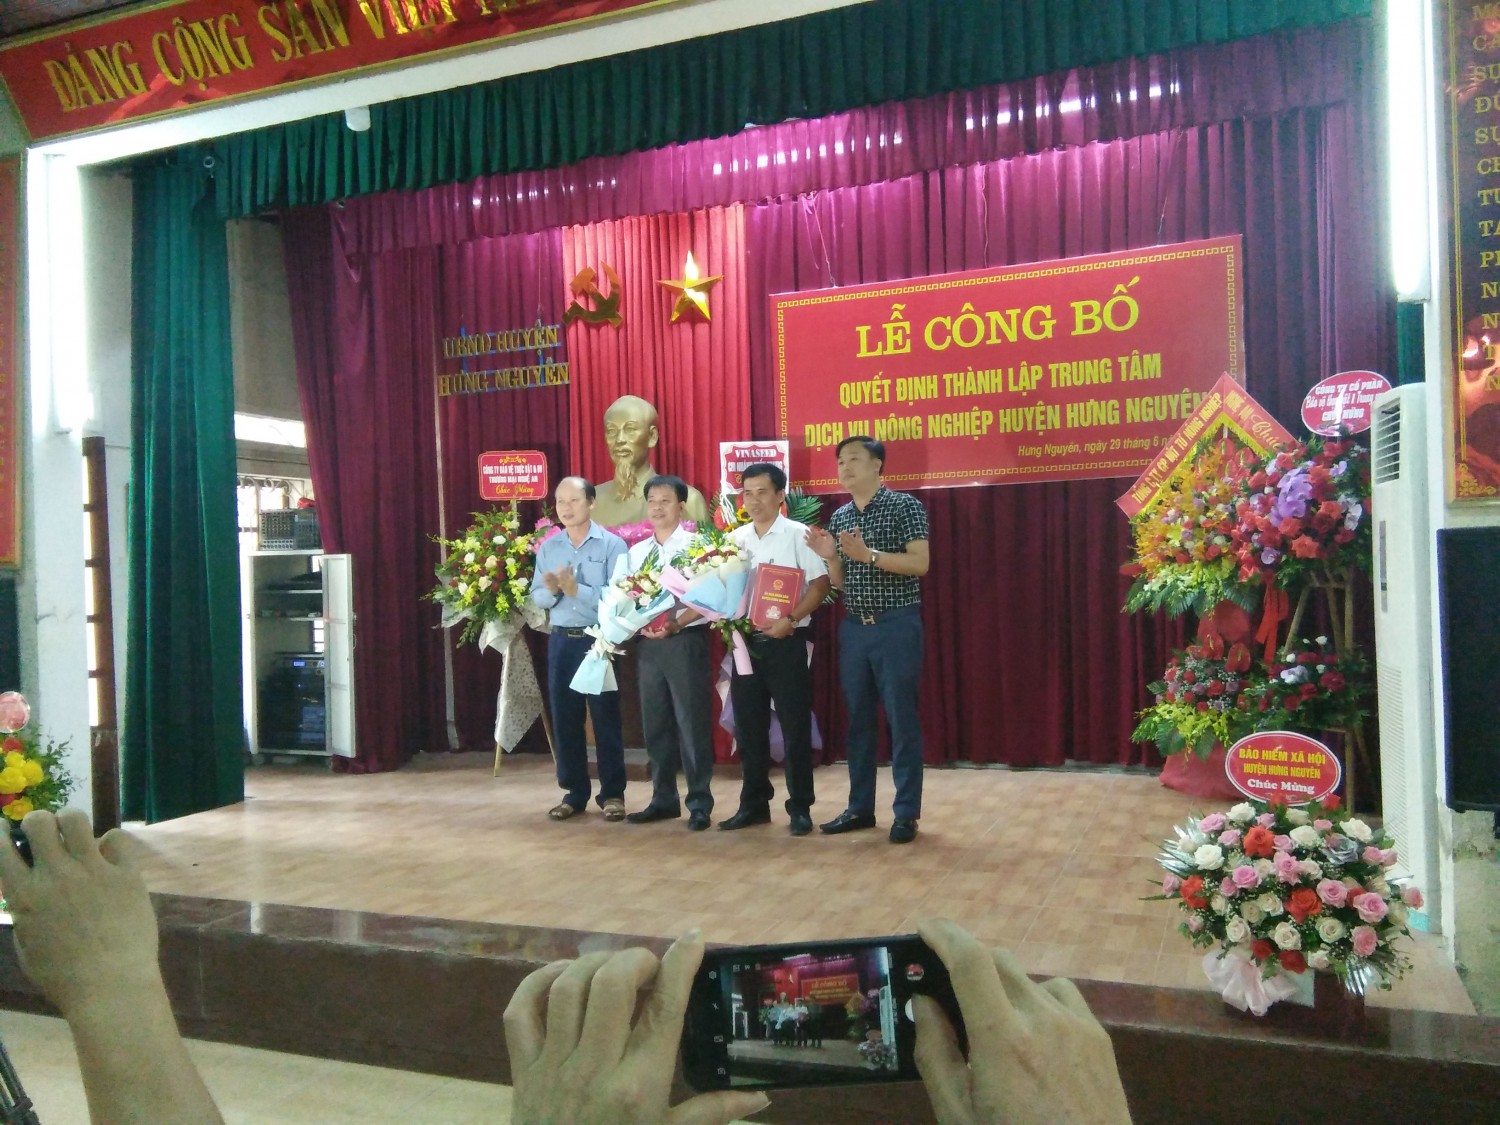 UBND huyện Hưng Nguyên: Công bố thành lập Trung tâm Dịch vụ nông nghiệp huyện Hưng Nguyên.